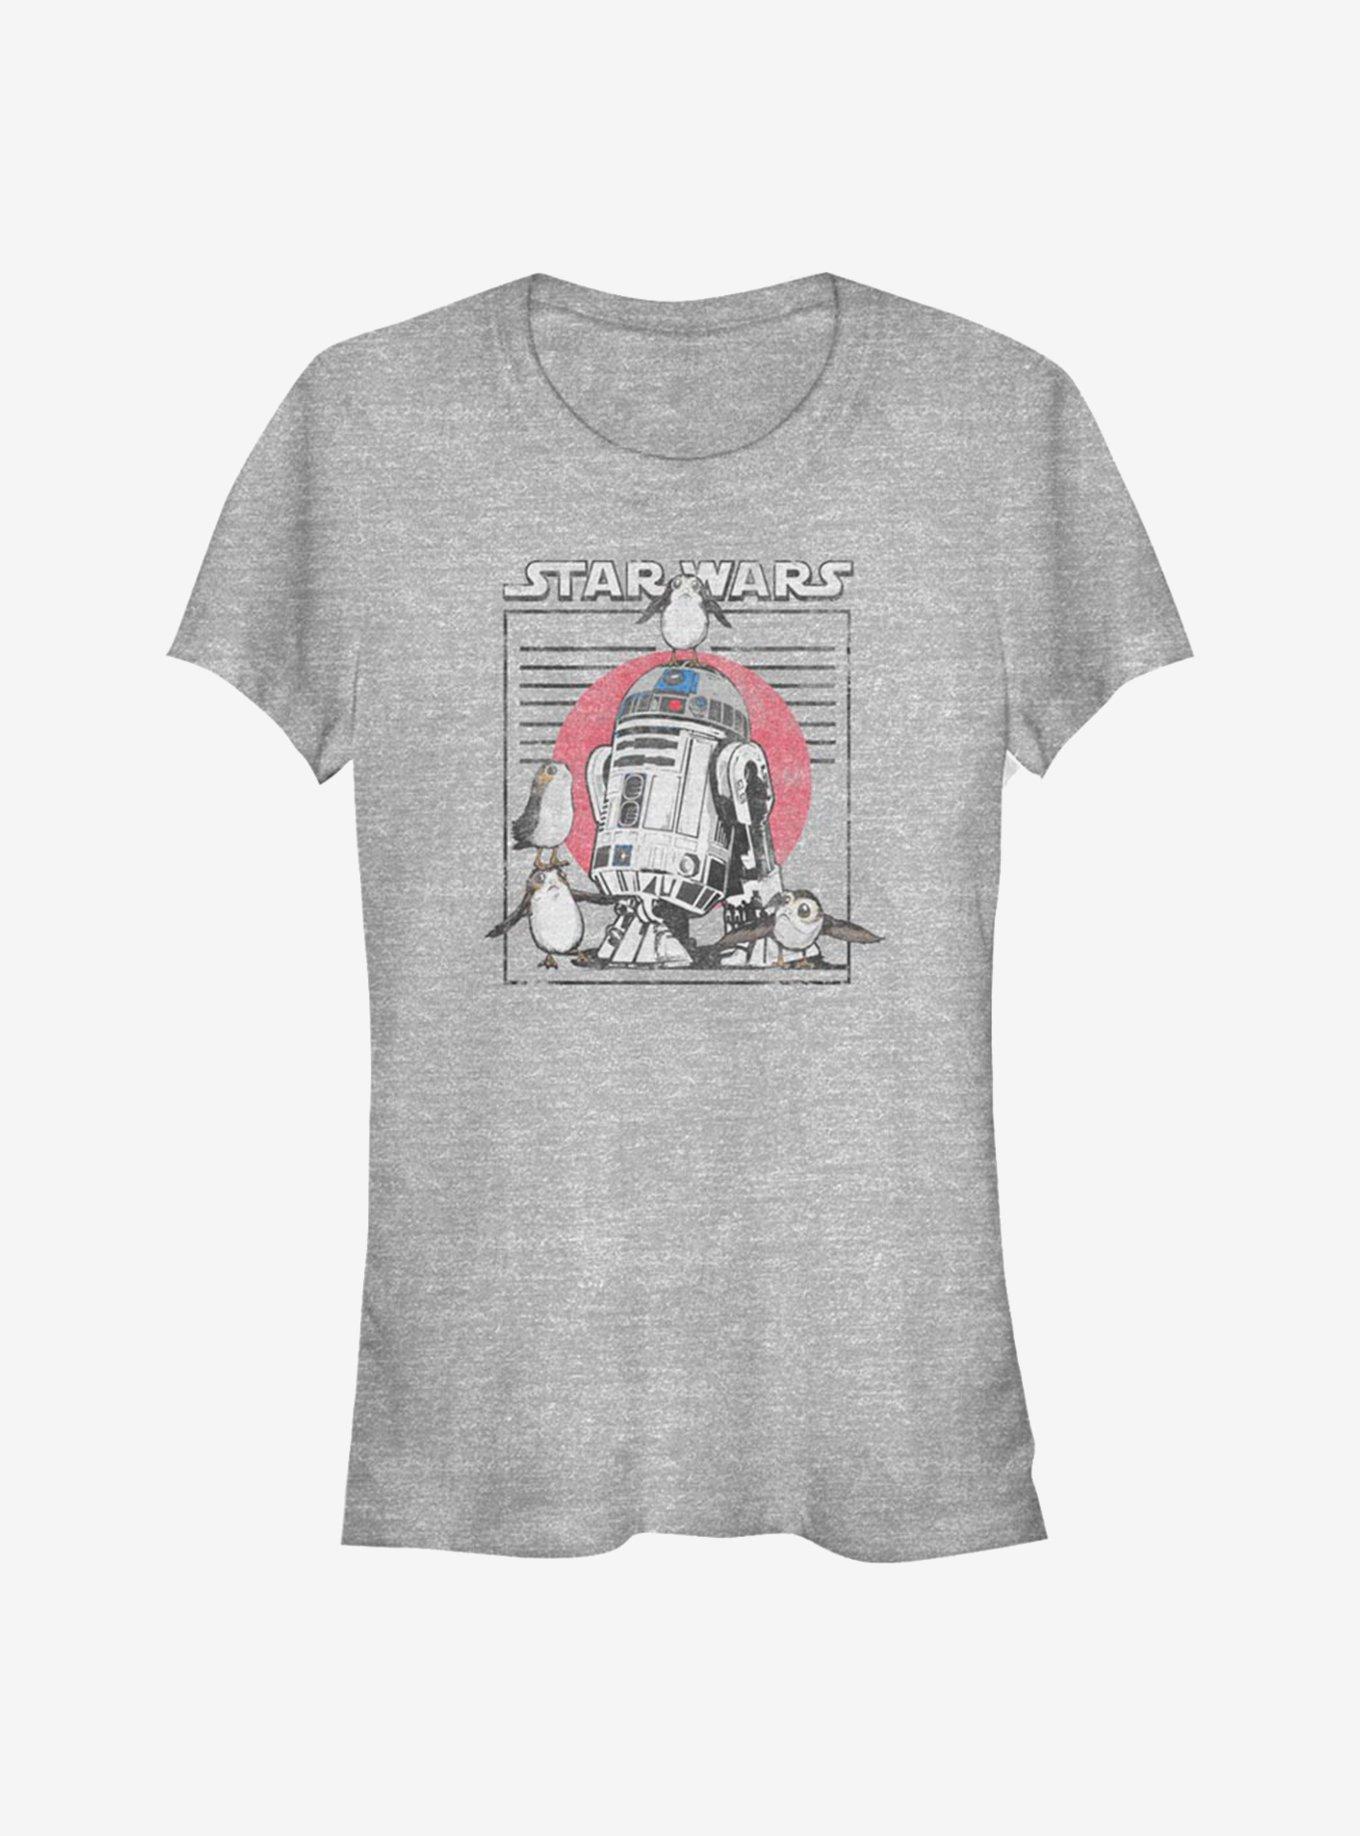 Star Wars: The Last Jedi New Friends Girls T-Shirt, ATH HTR, hi-res